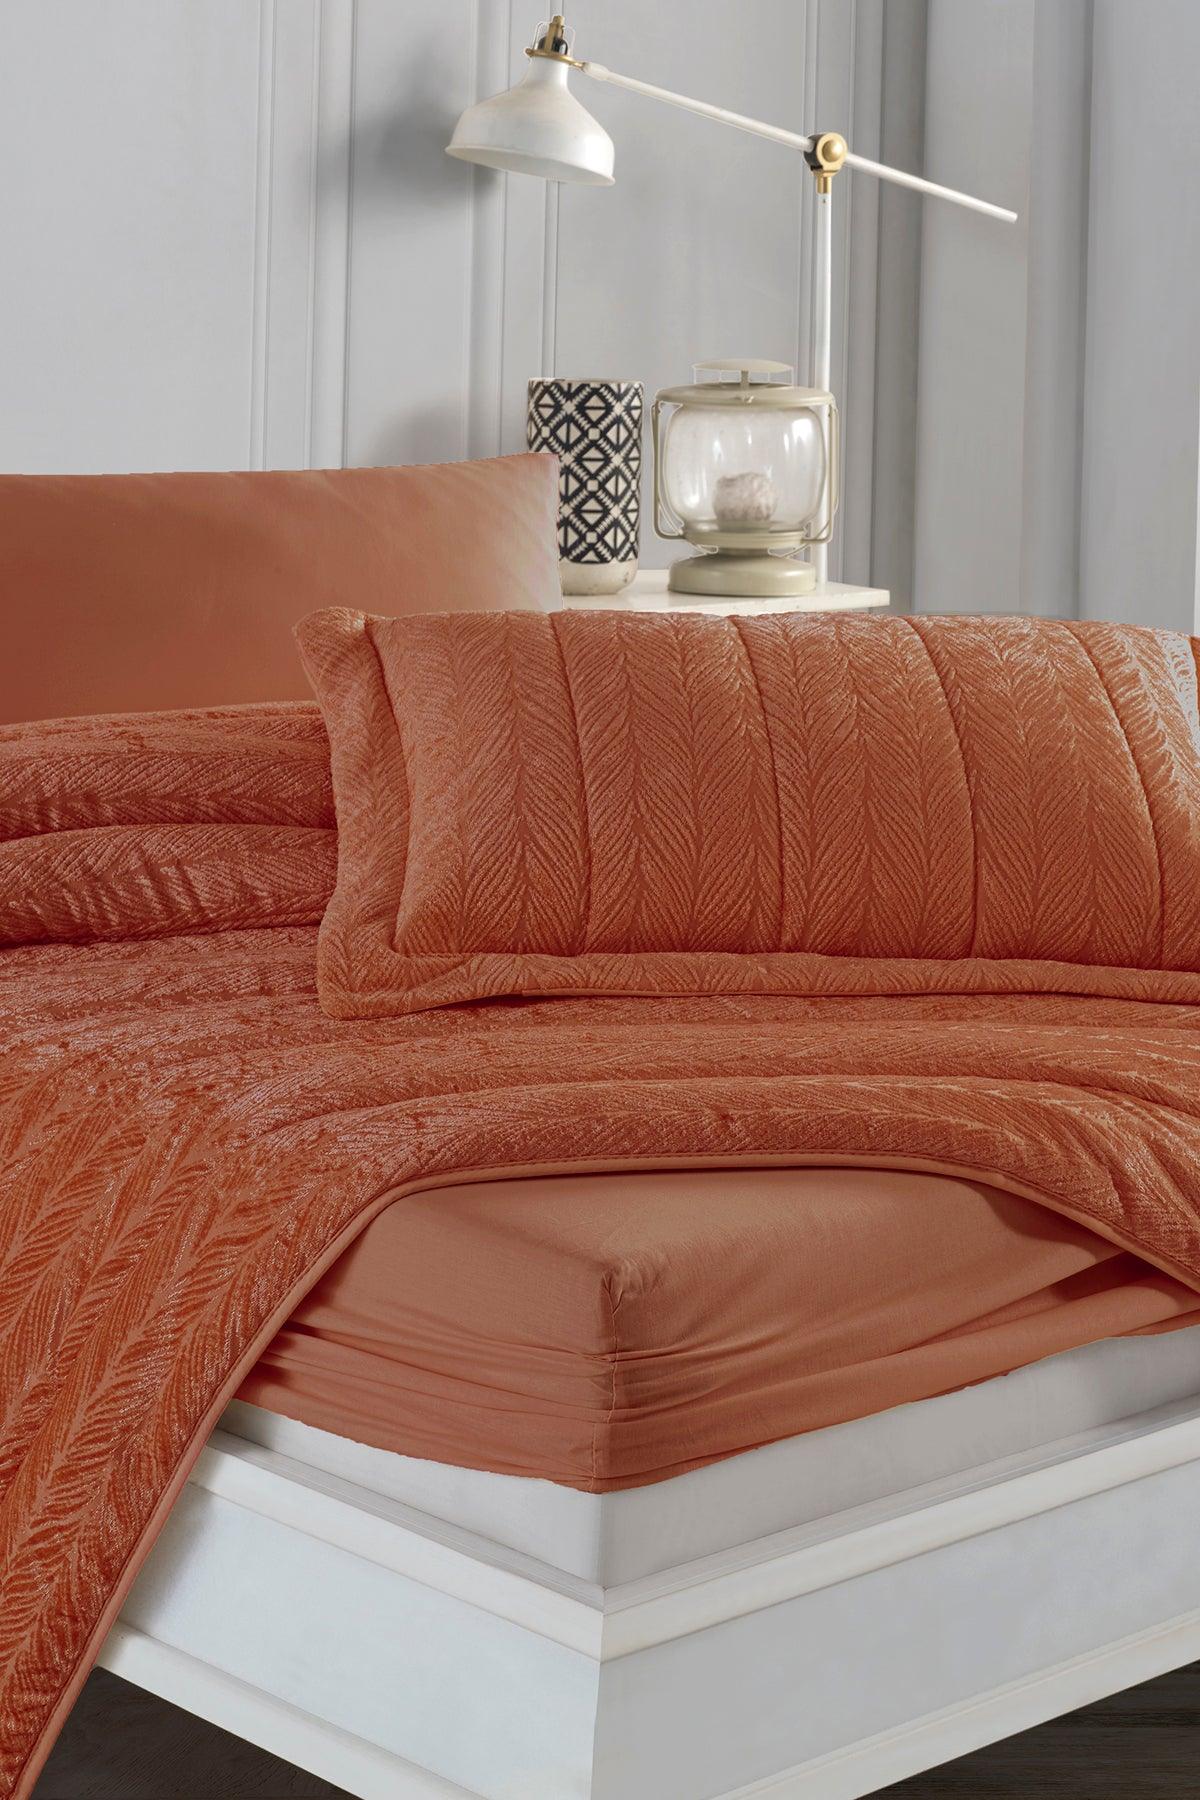 Comfort yeni nesil uykuseti - 6 parça Velvet Tarçın (230x220cm) - Elart Home